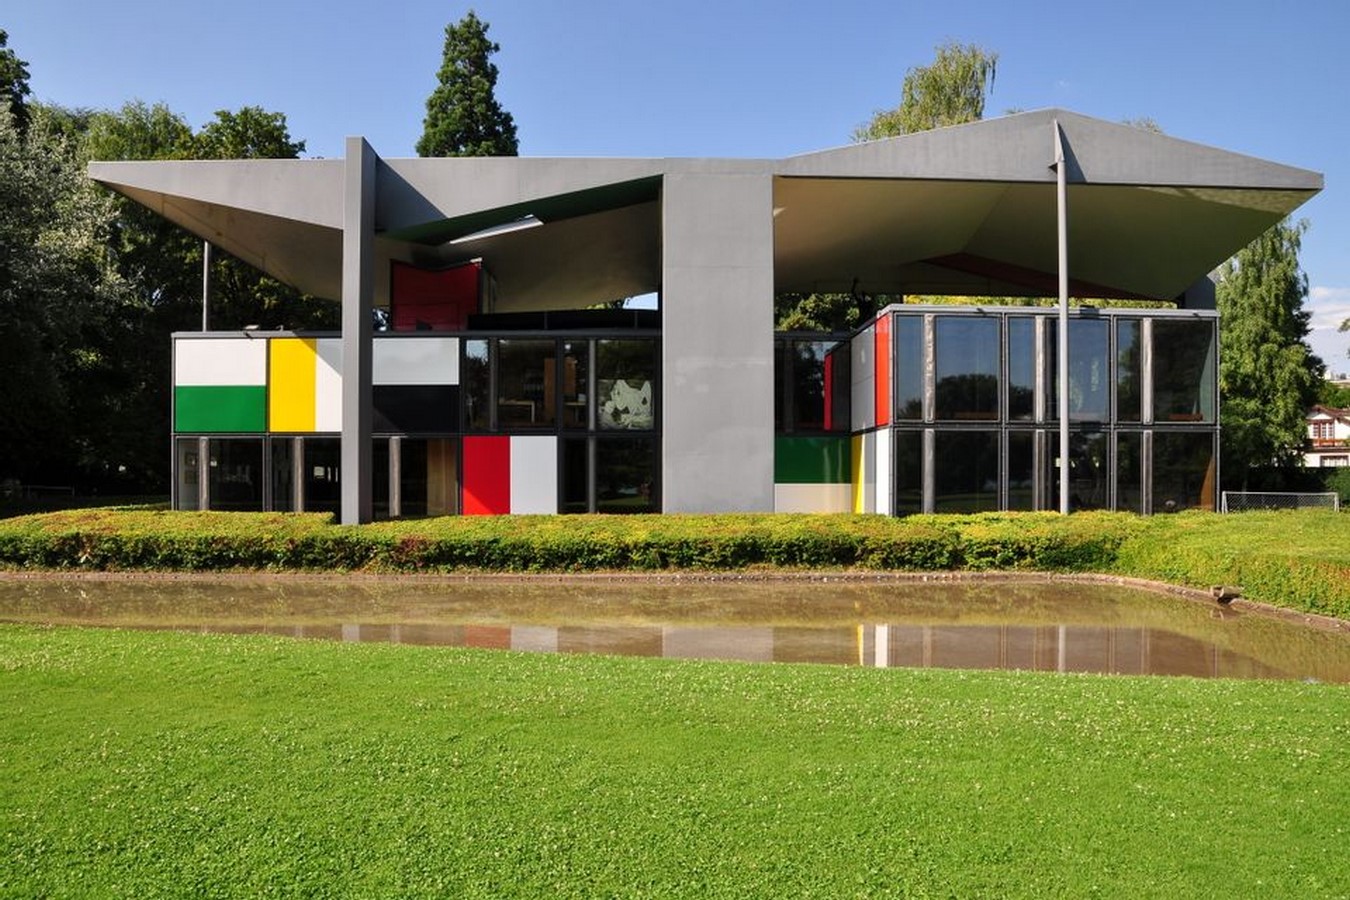 Pavillon Le Corbusier by Le Corbusier: The colourful museum - Sheet3